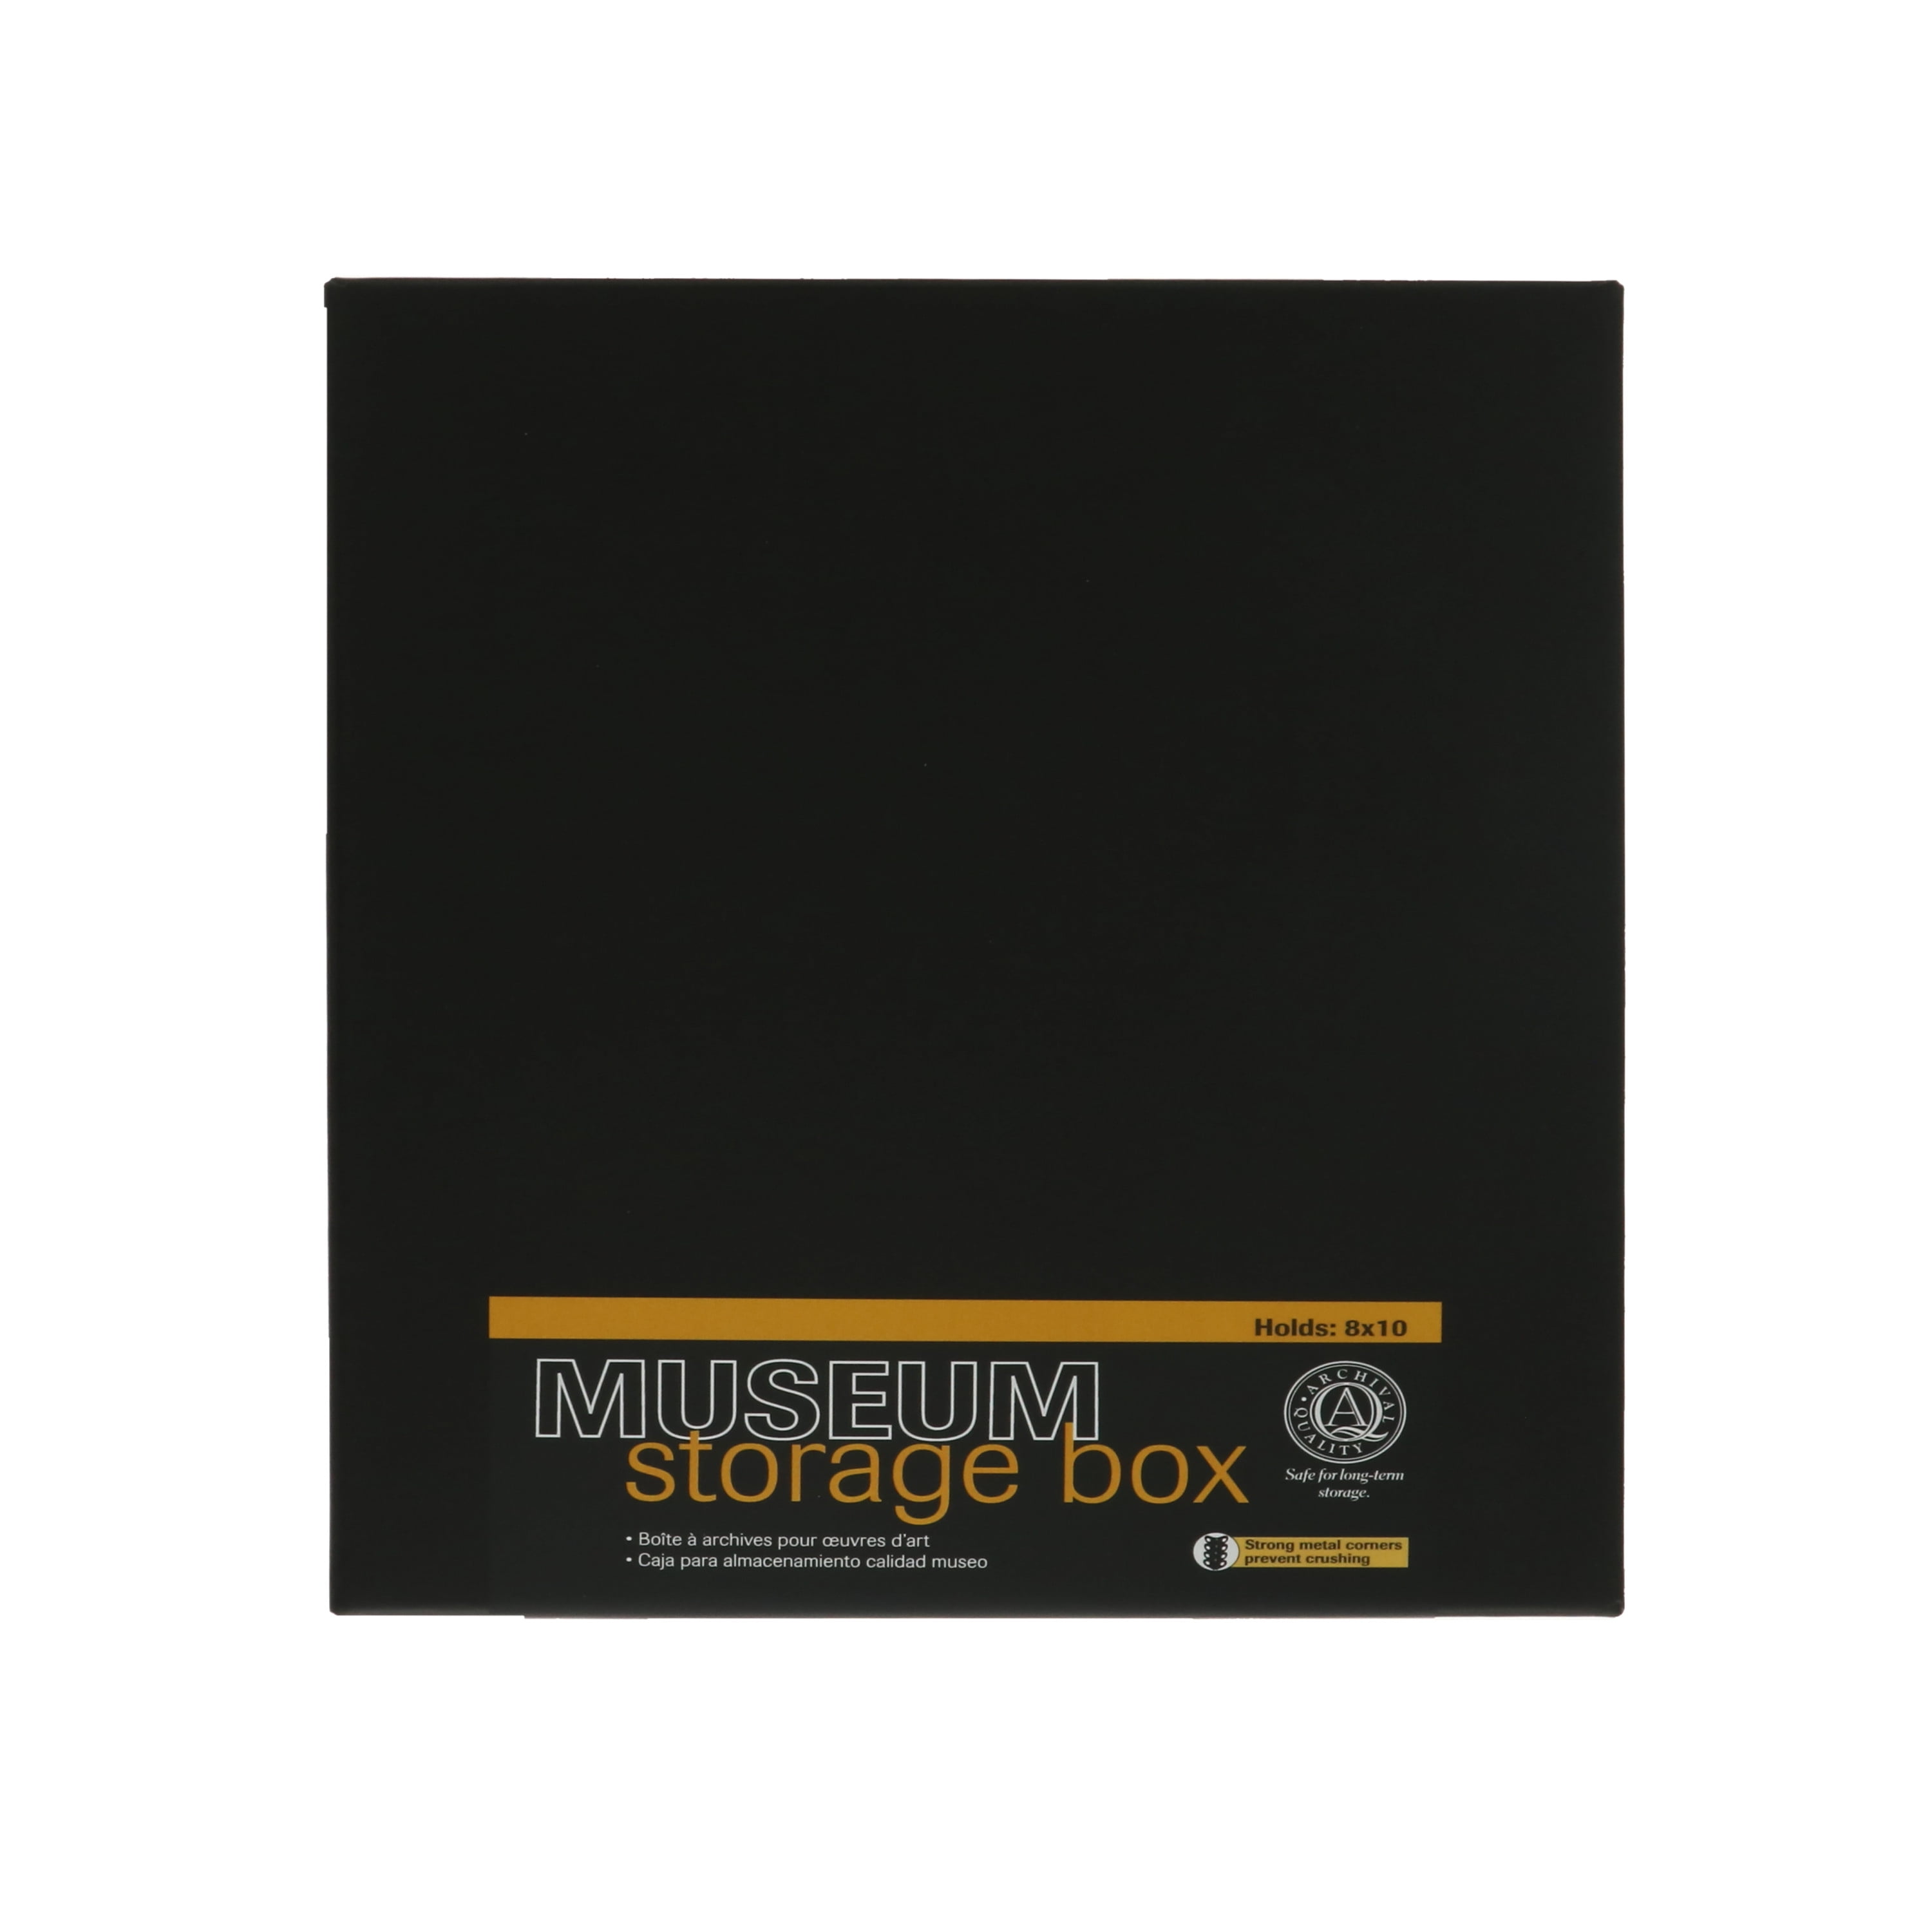  Storage Box 8x10